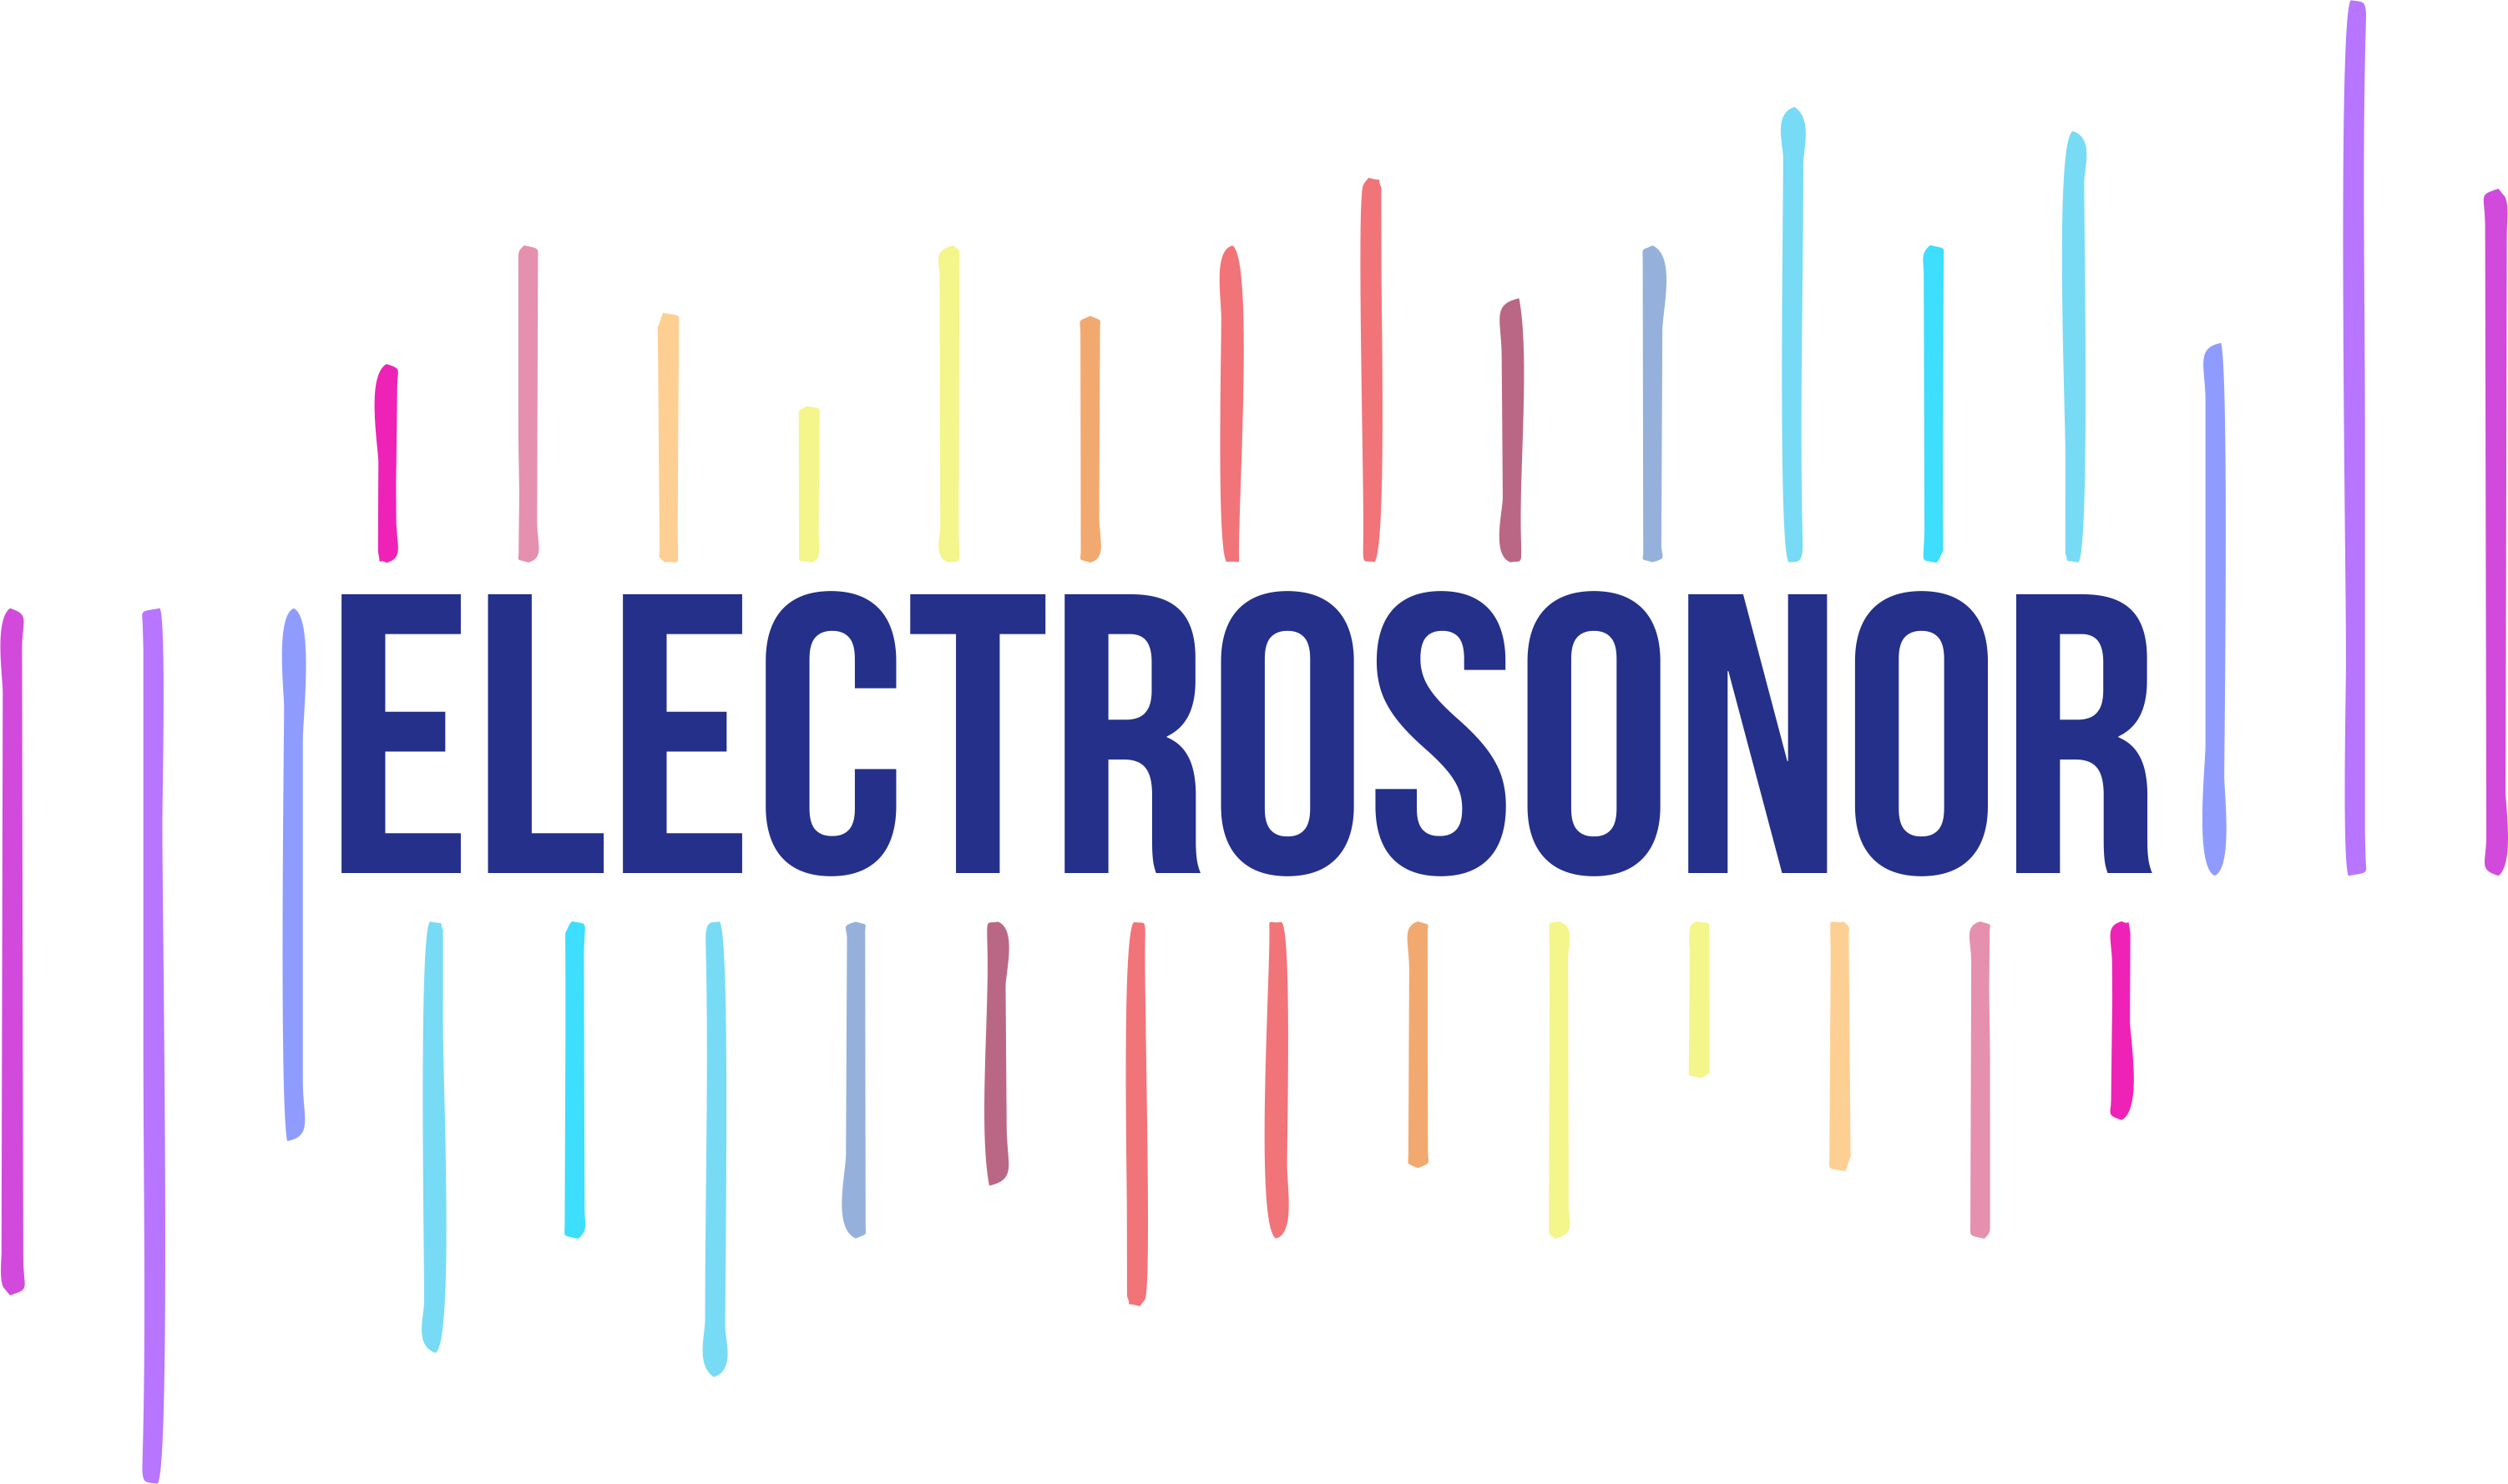 Electrosonor